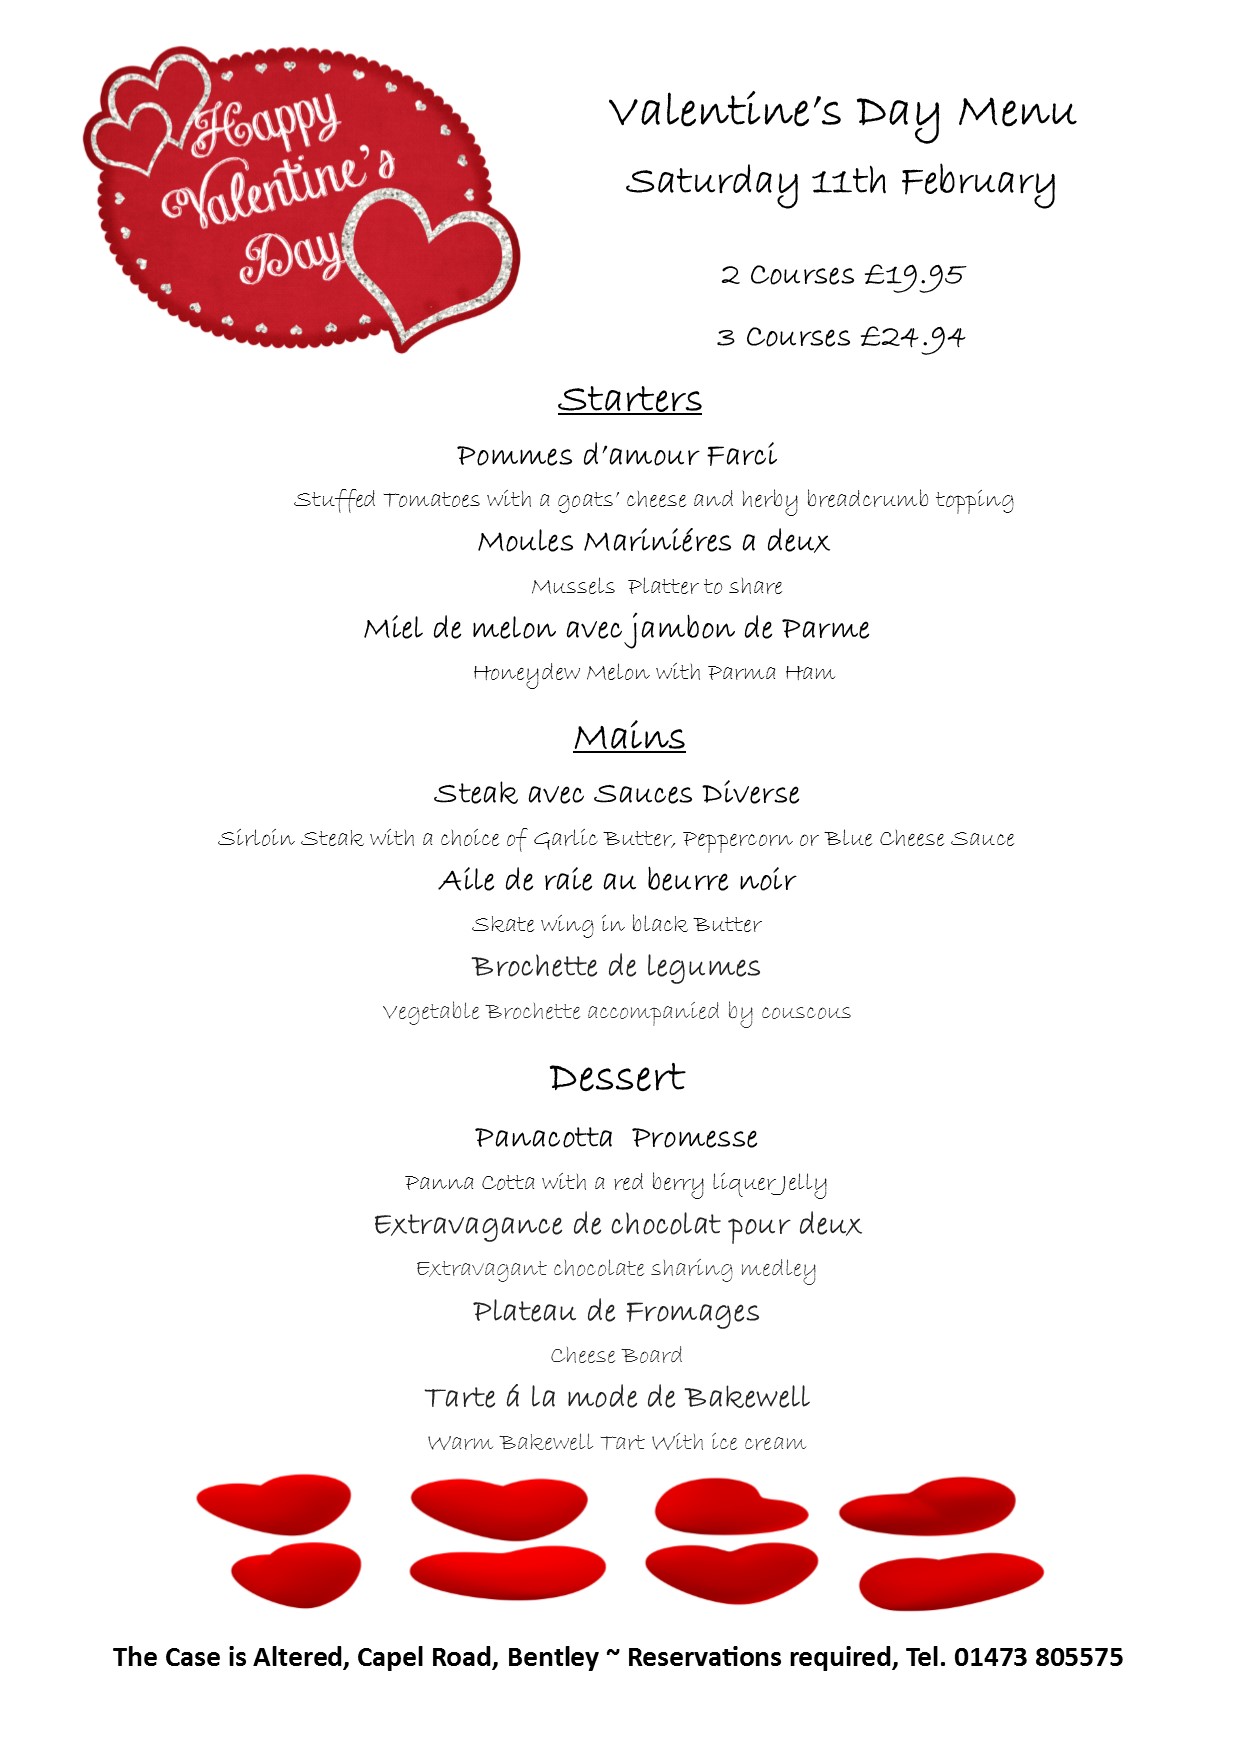 Valentines menu 